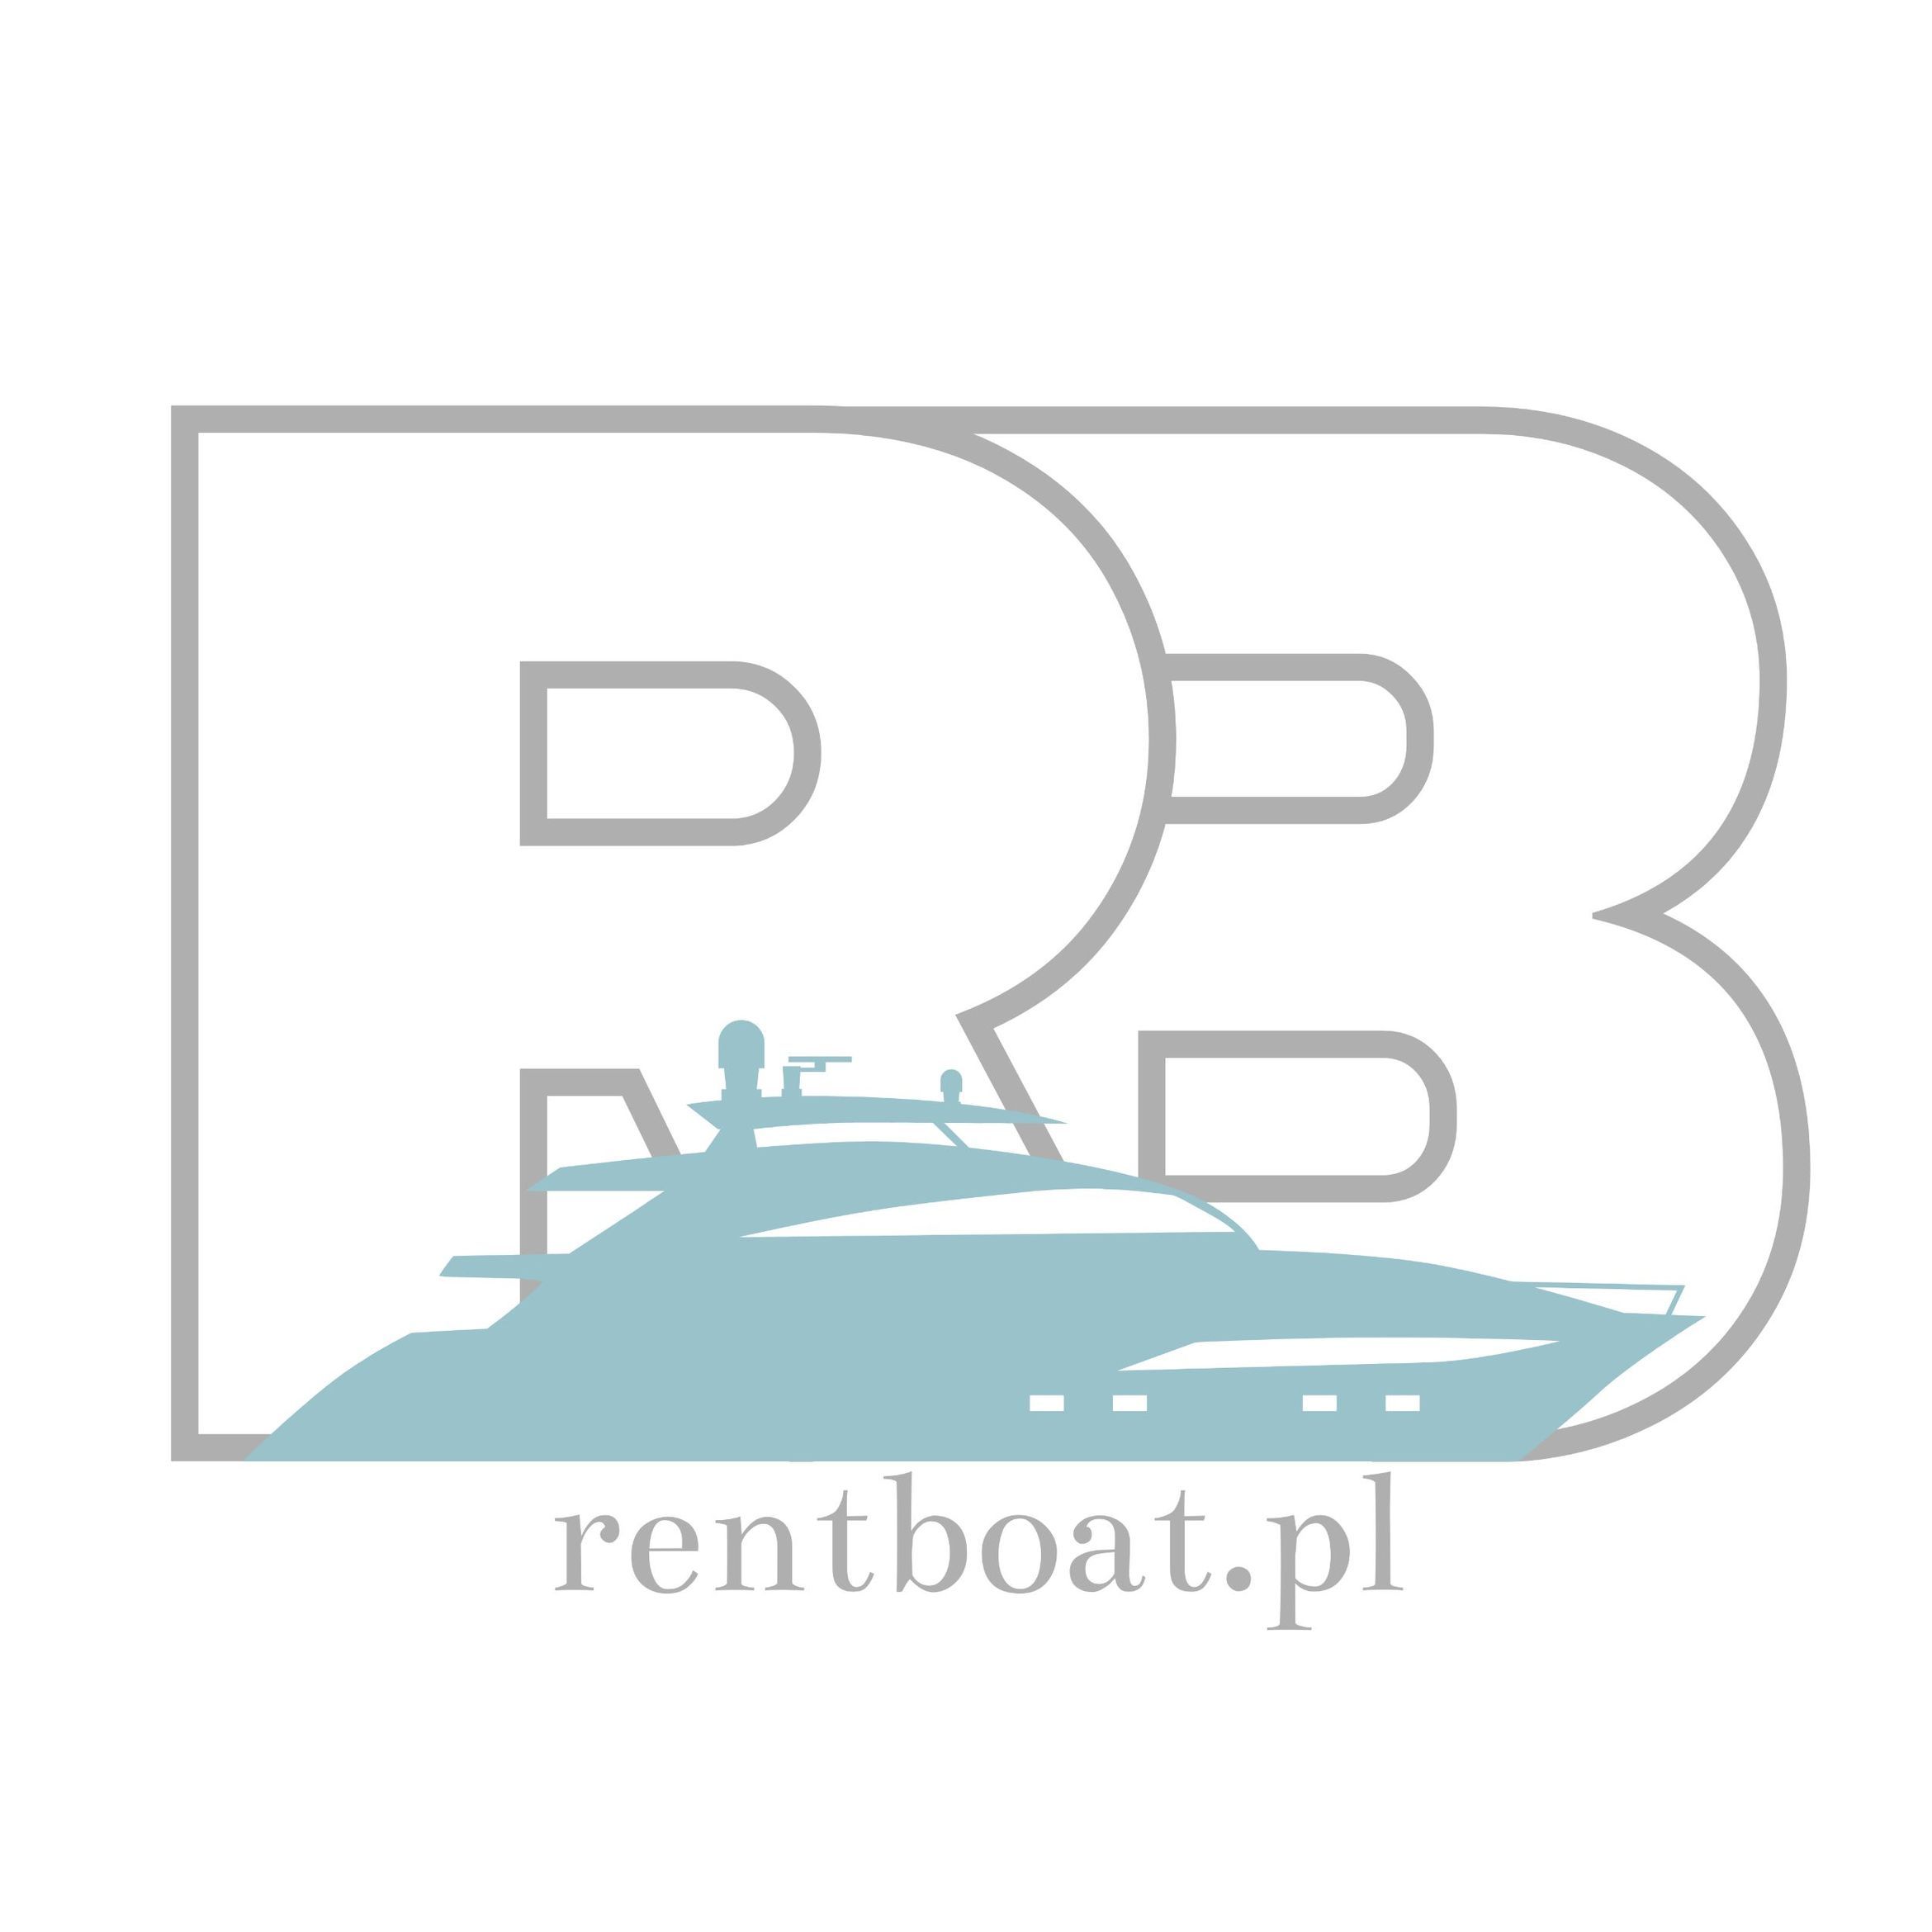 Rent Boat Sol-Marina, Łąkowa 193, 83-011, Pruszcz Gdański (Gmina)